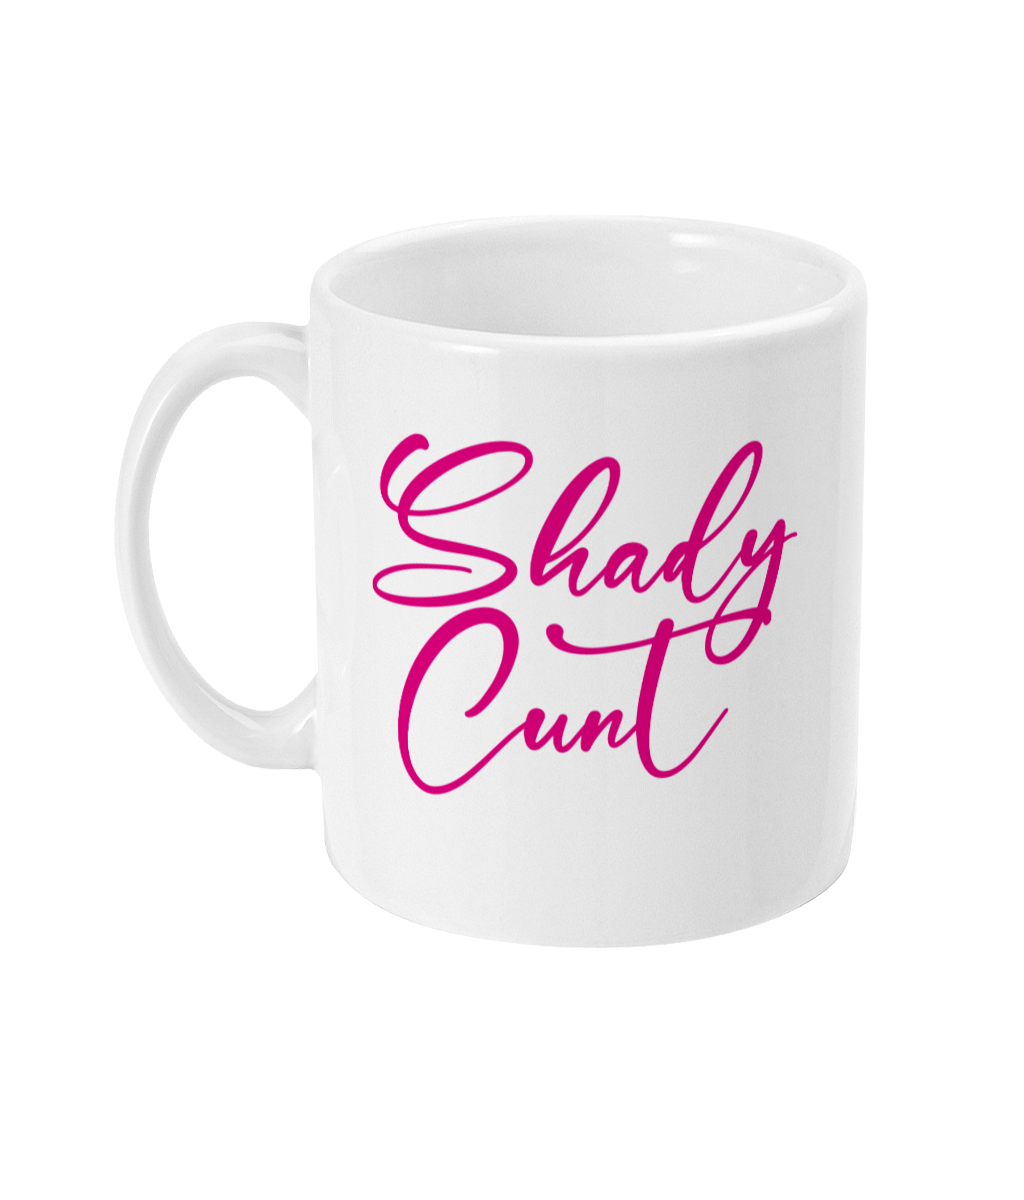 Snatched - Shady Cunt Mug